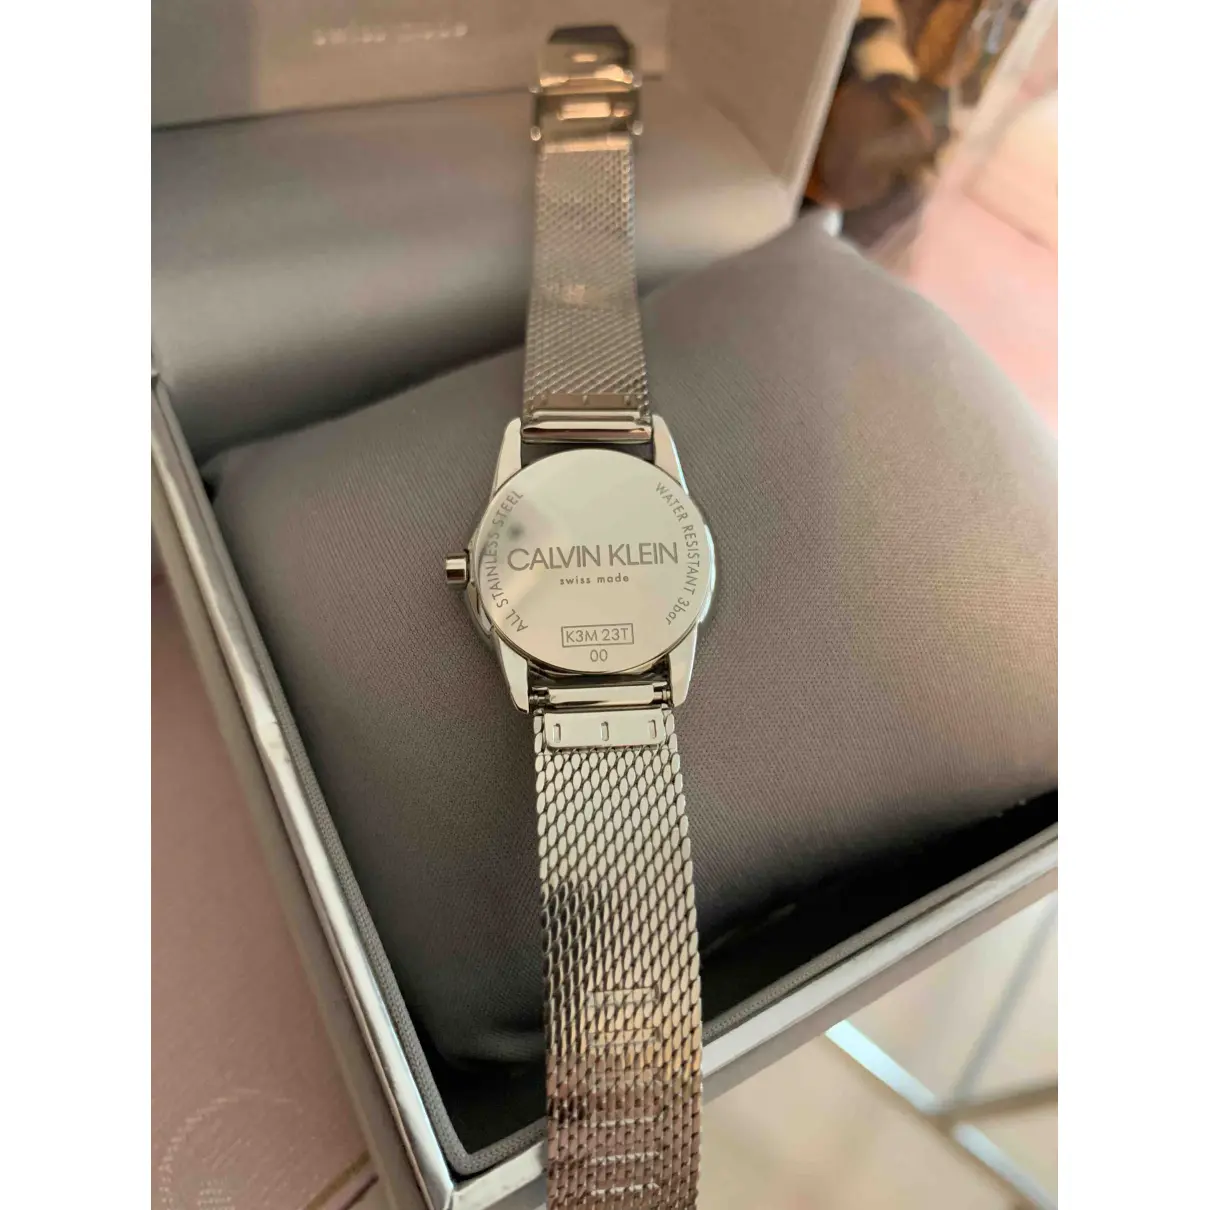 Buy Calvin Klein Silver gilt watch online